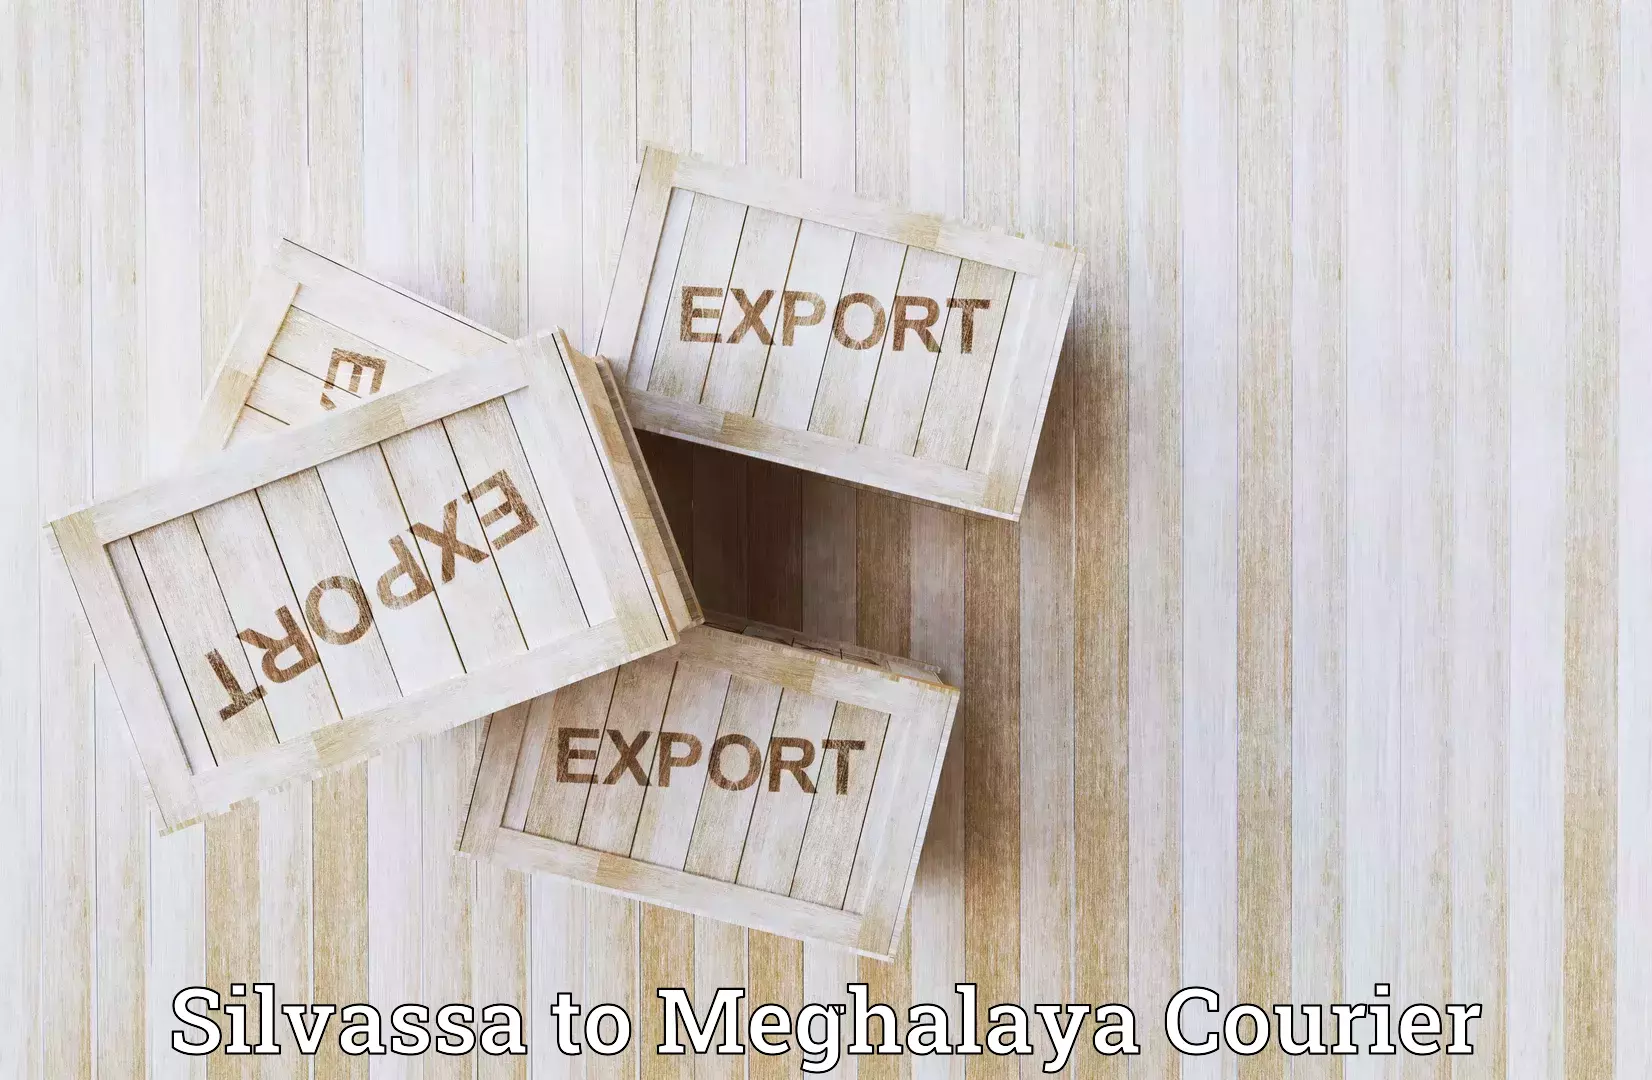 Efficient logistics management Silvassa to Dkhiah West